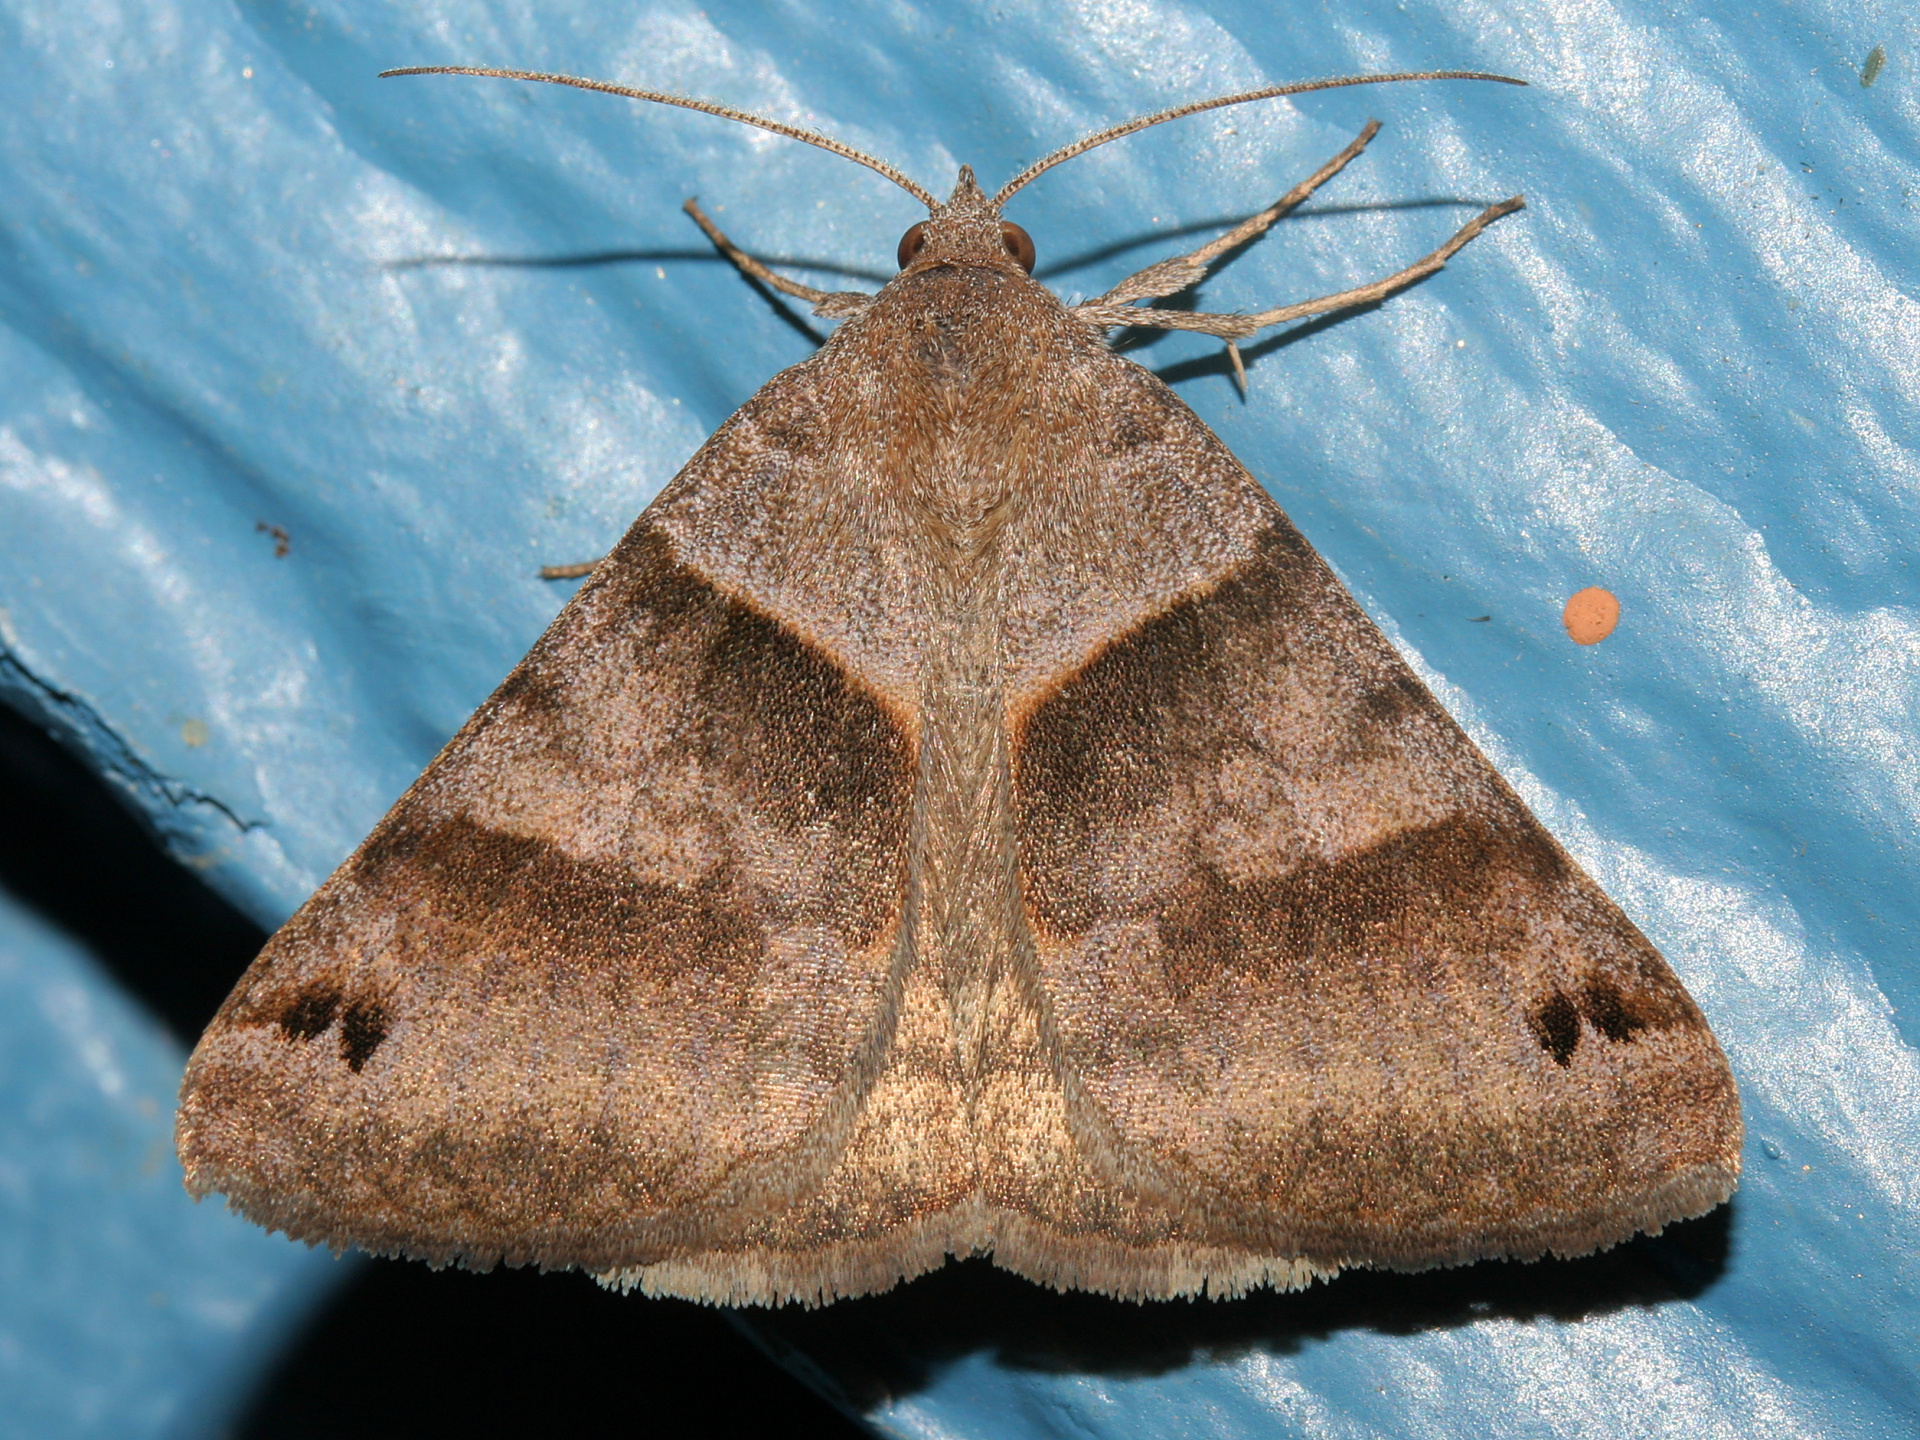 Caenurgina erechtea (Podróże » USA: Epopeja Czejeńska » Zwierzęta » Owady » Motyle i ćmy » Noctuidae)